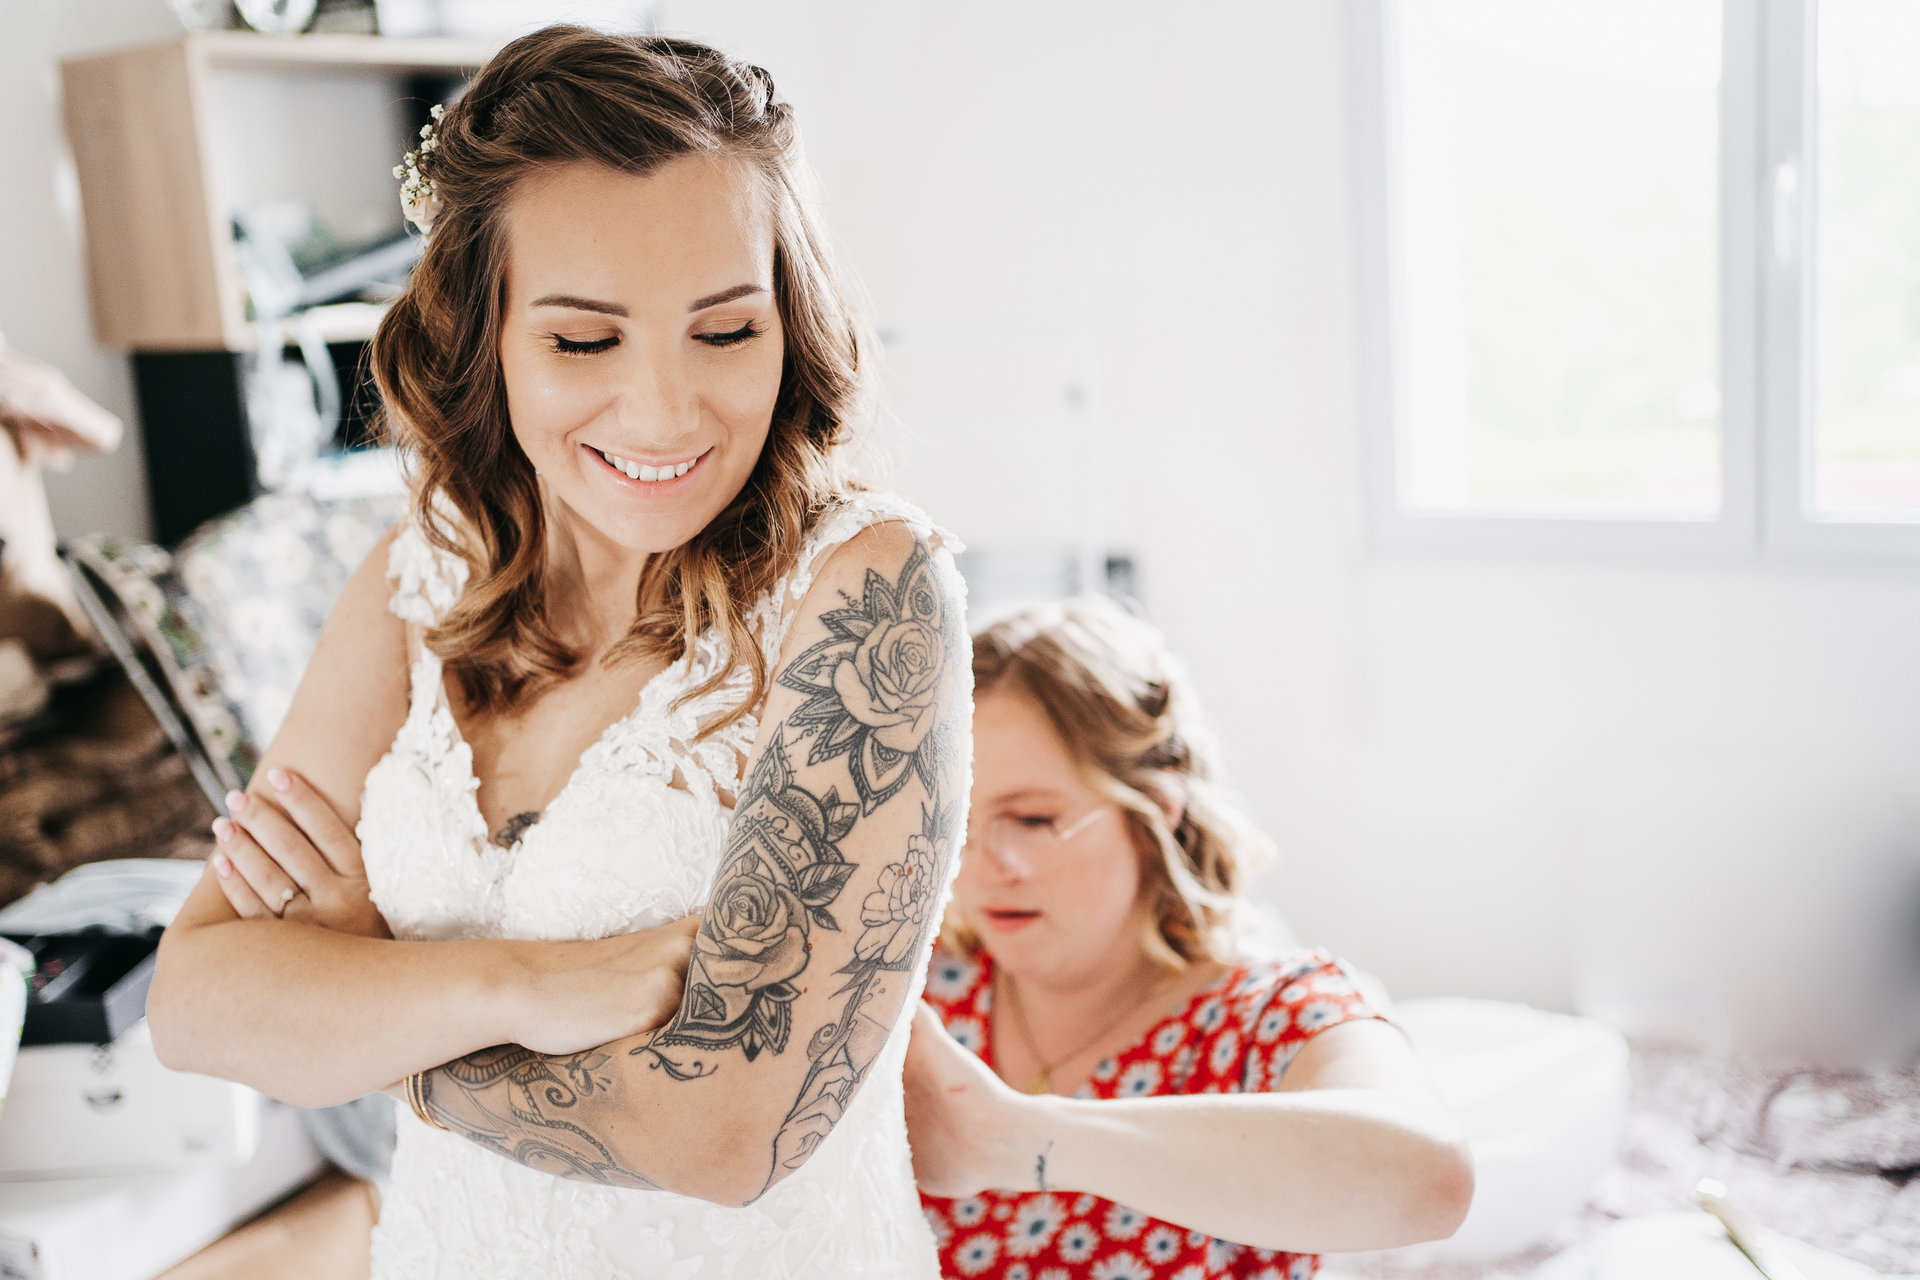 Une mariée se prépare pour son mariage avec des tatouages sur son bras.